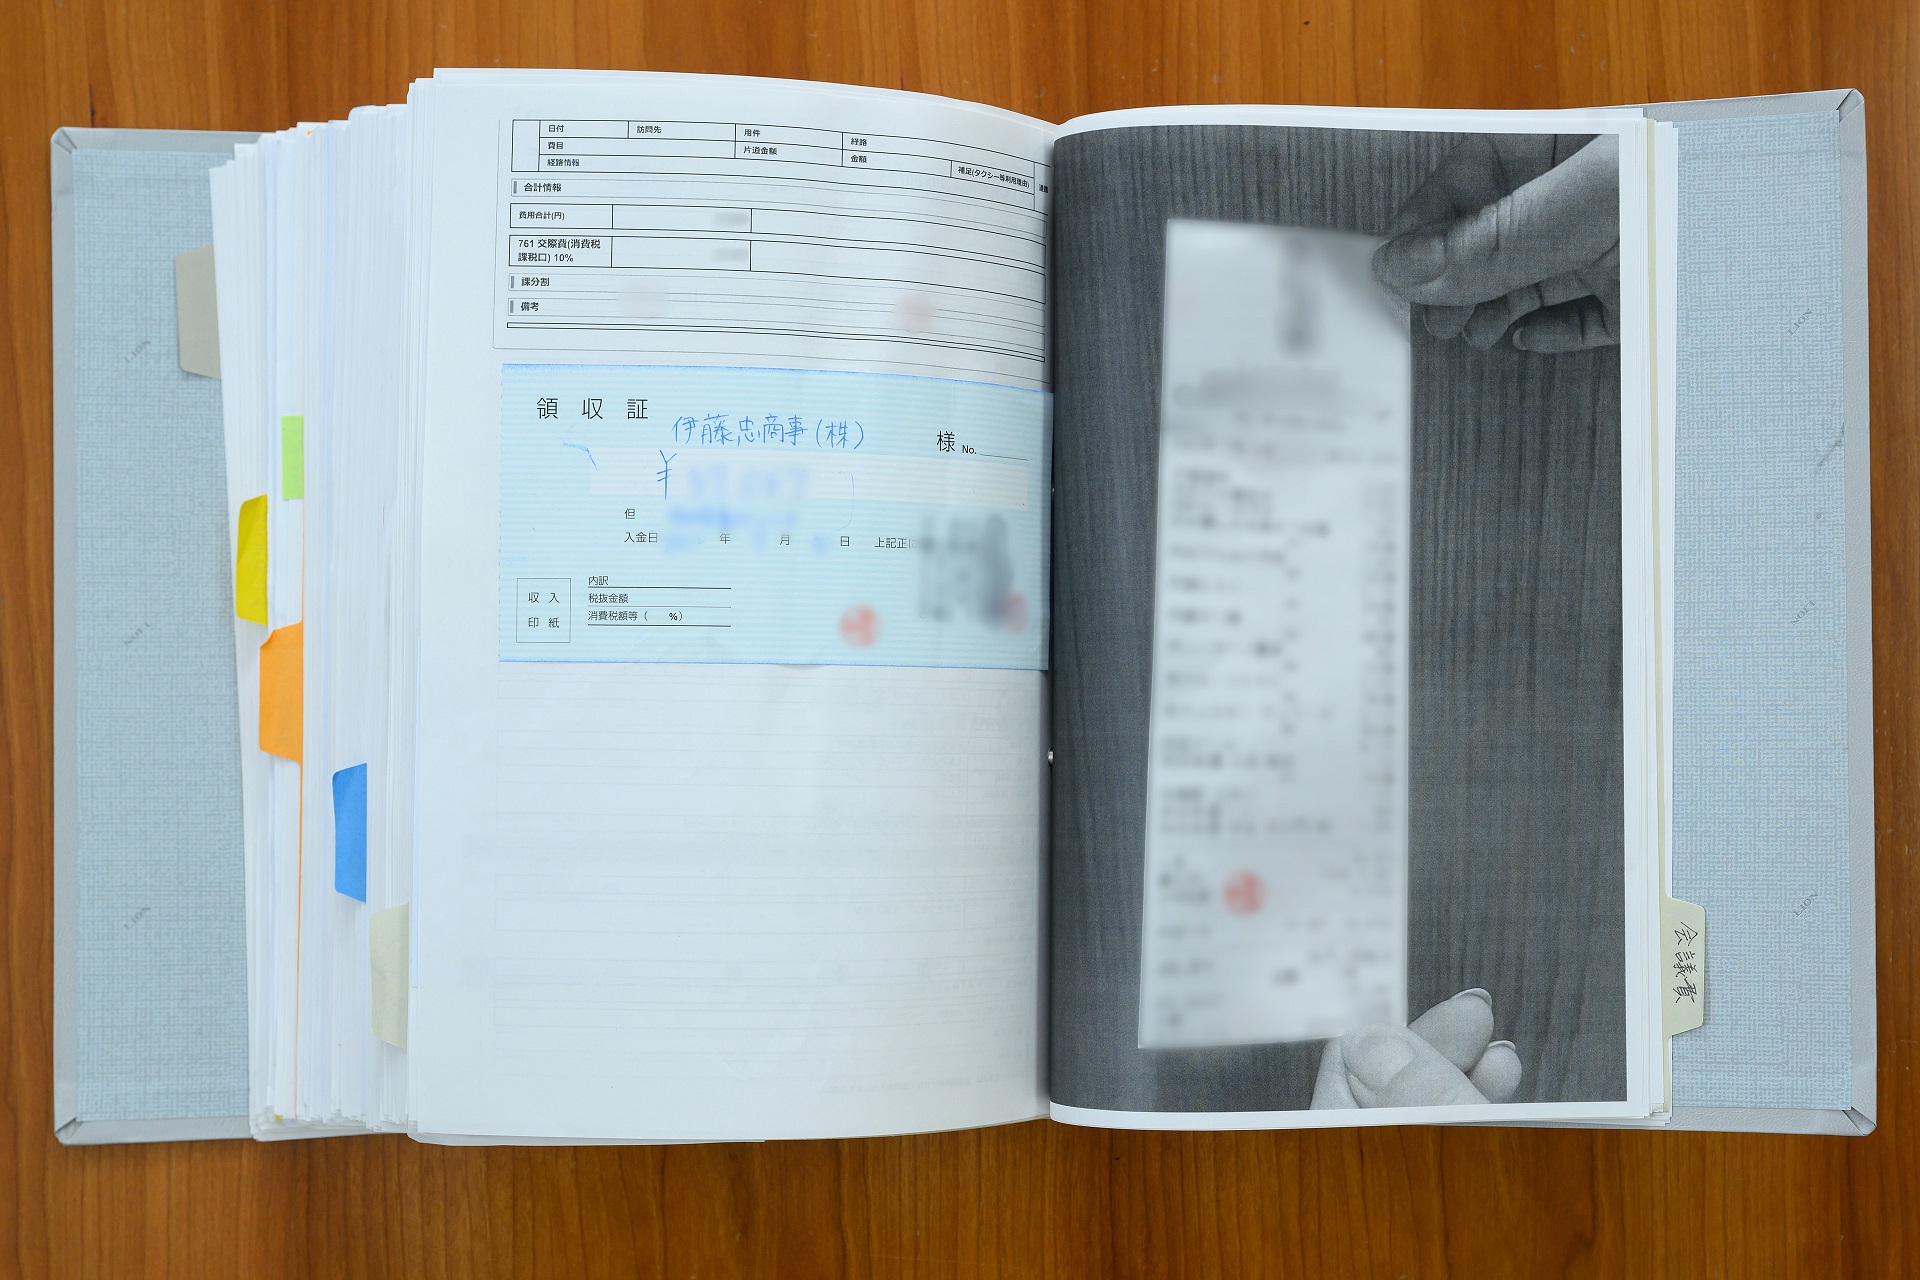 証憑を紙で回付していた頃の、交際費精算のための領収書の原本の写真